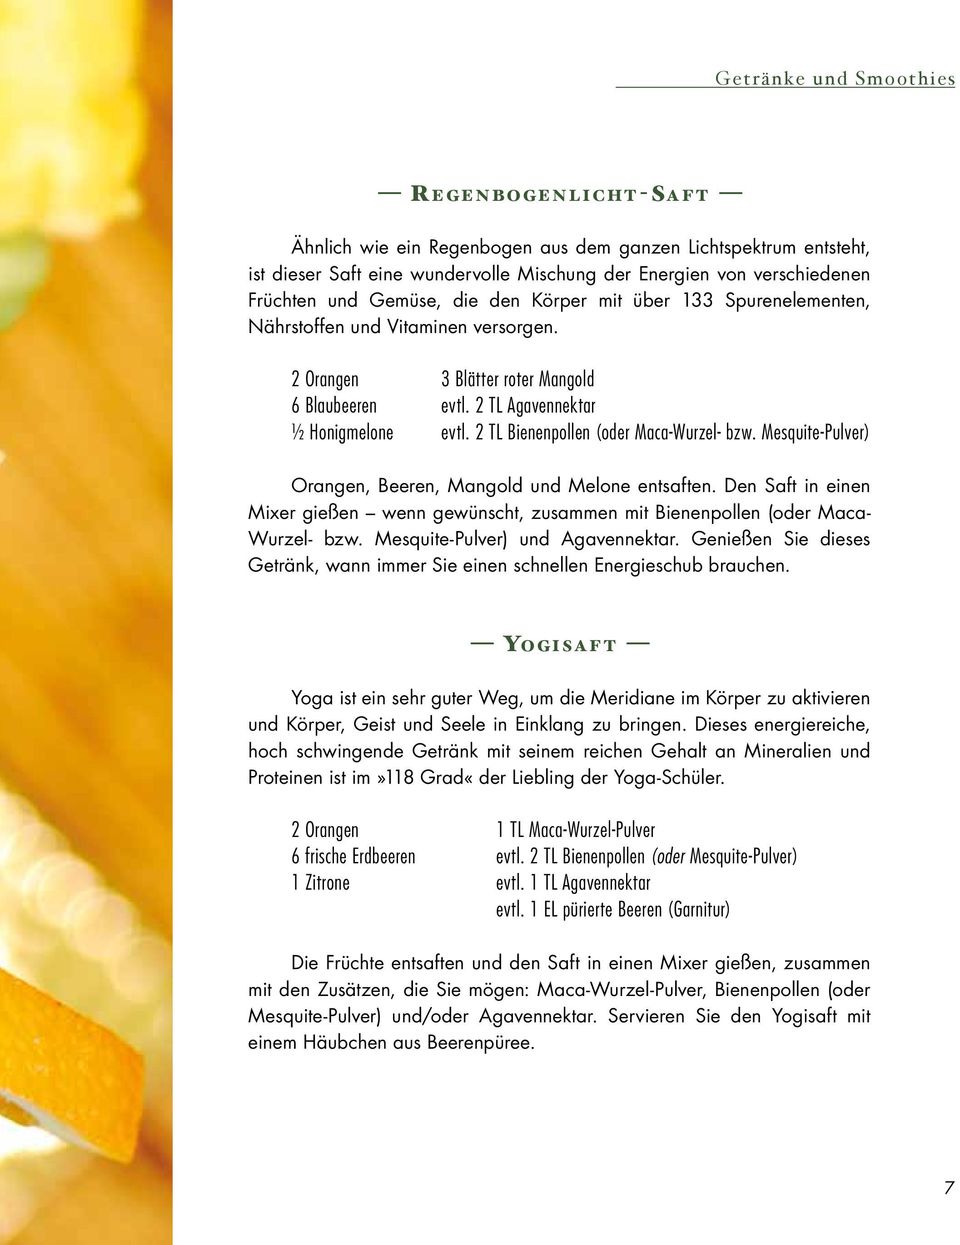 2 TL Bienenpollen (oder Maca-Wurzel- bzw. Mesquite-Pulver) Orangen, Beeren, Mangold und Melone entsaften.